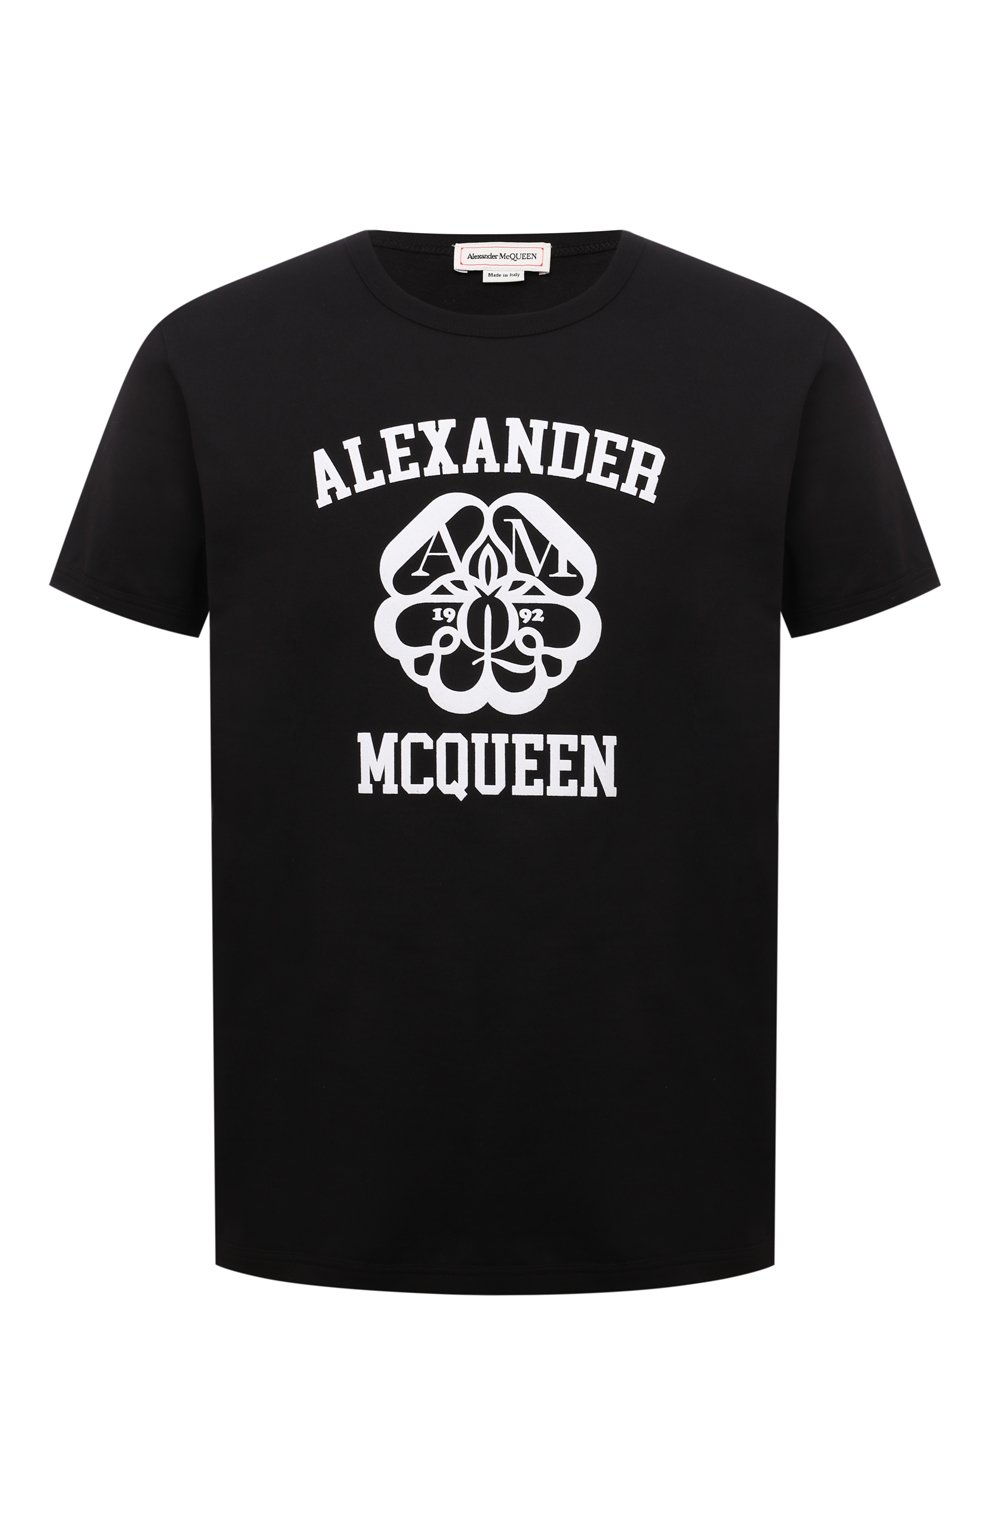 Футболки Alexander McQueen, Хлопковая футболка Alexander McQueen, Италия, Чёрный, Хлопок: 100%;, 12453859  - купить